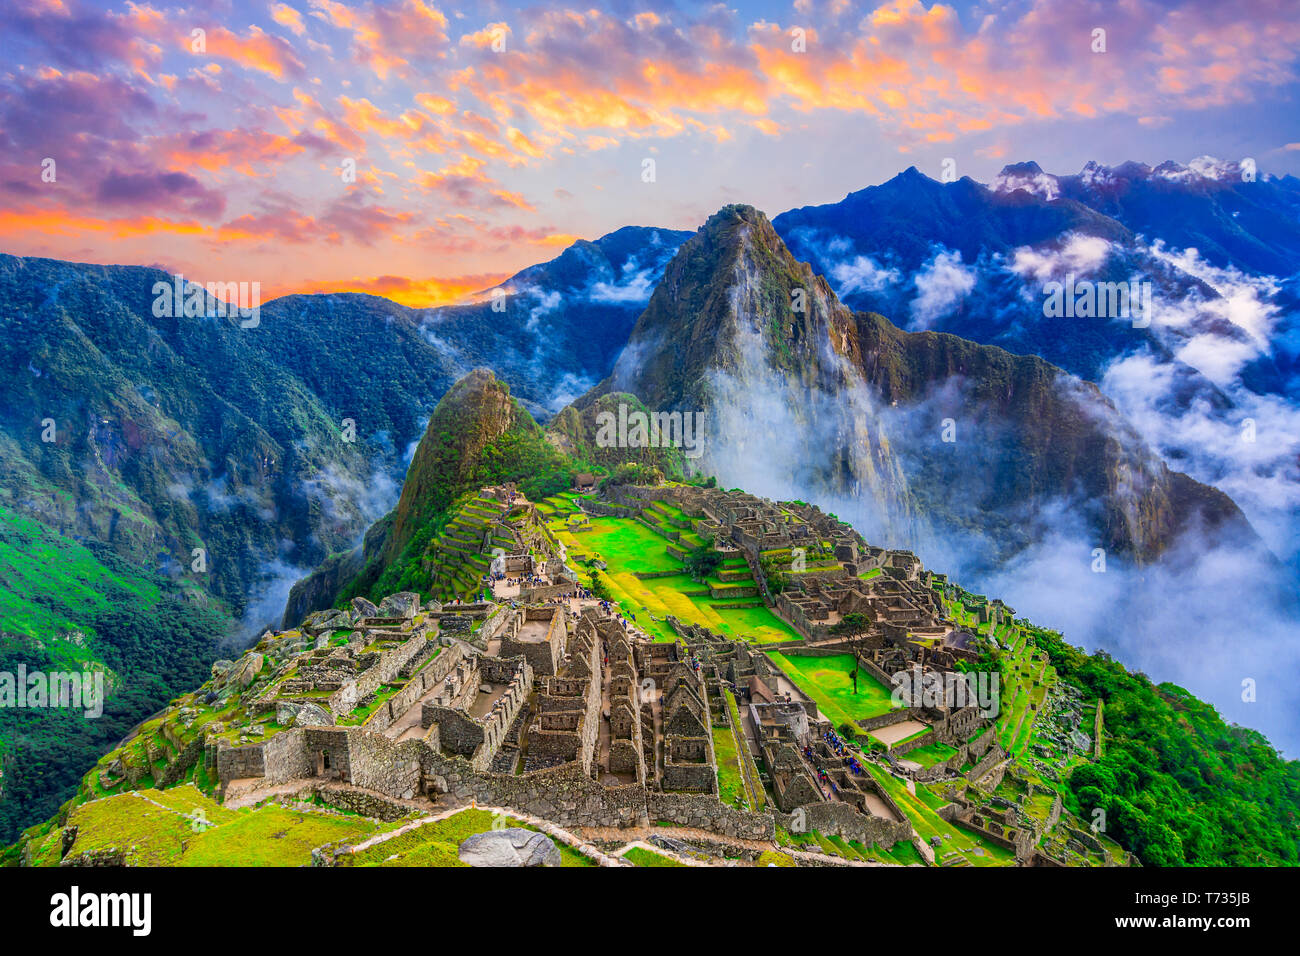 Machu Picchu, Cusco,Peru: Overview of the lost inca city Machu Picchu, agriculture terraces and Wayna Picchu, peak in the background,before sunrise Stock Photo